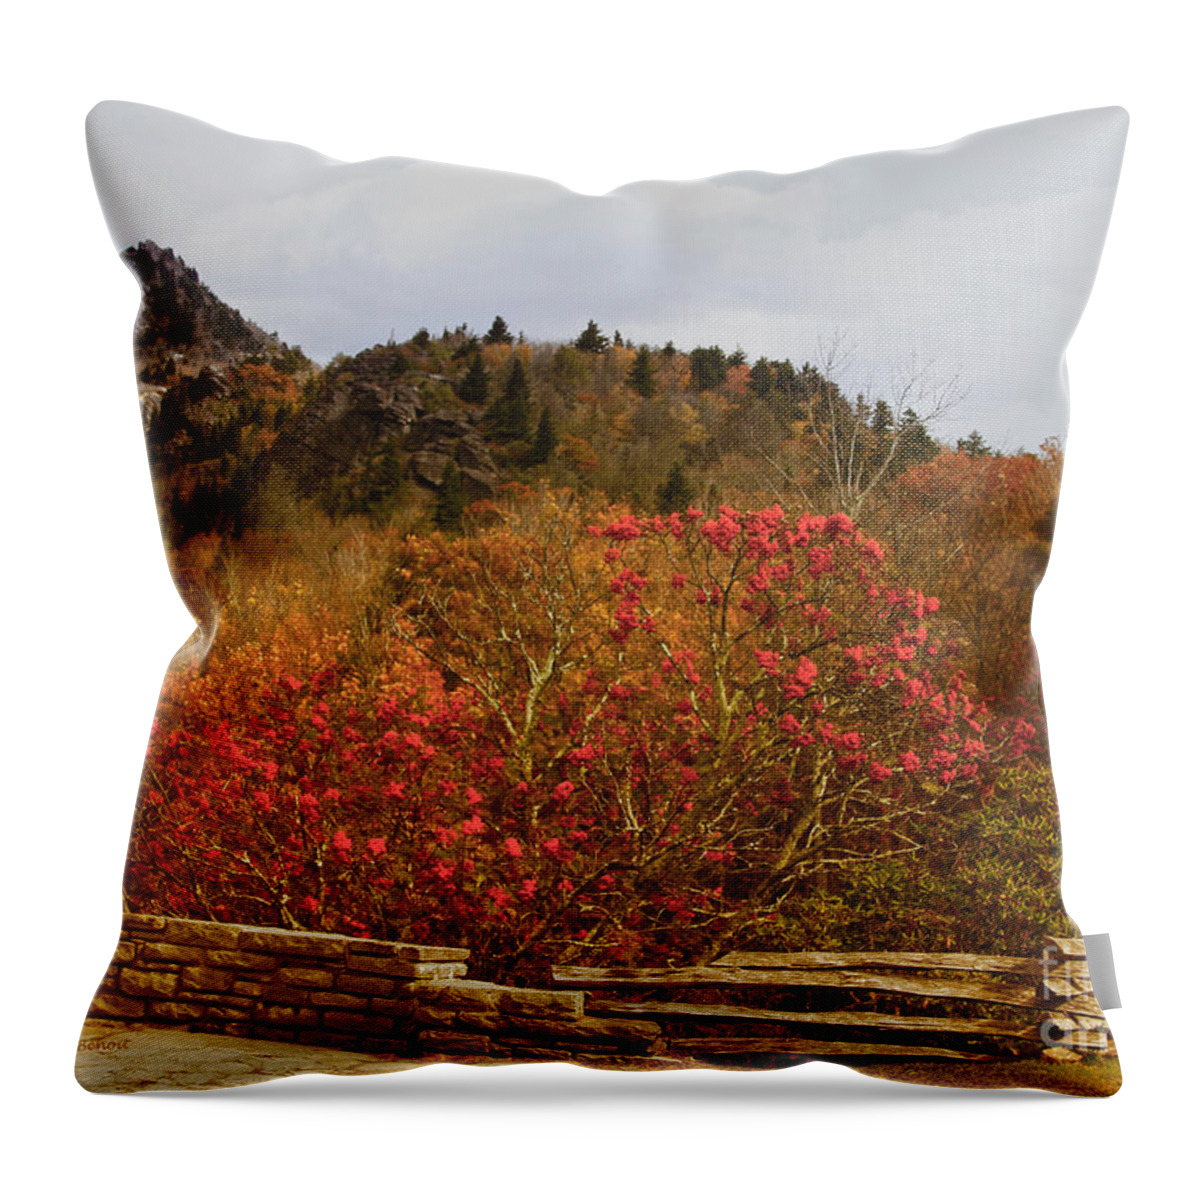 North Carolina Throw Pillow featuring the photograph North Carolina Beauty by Deborah Benoit